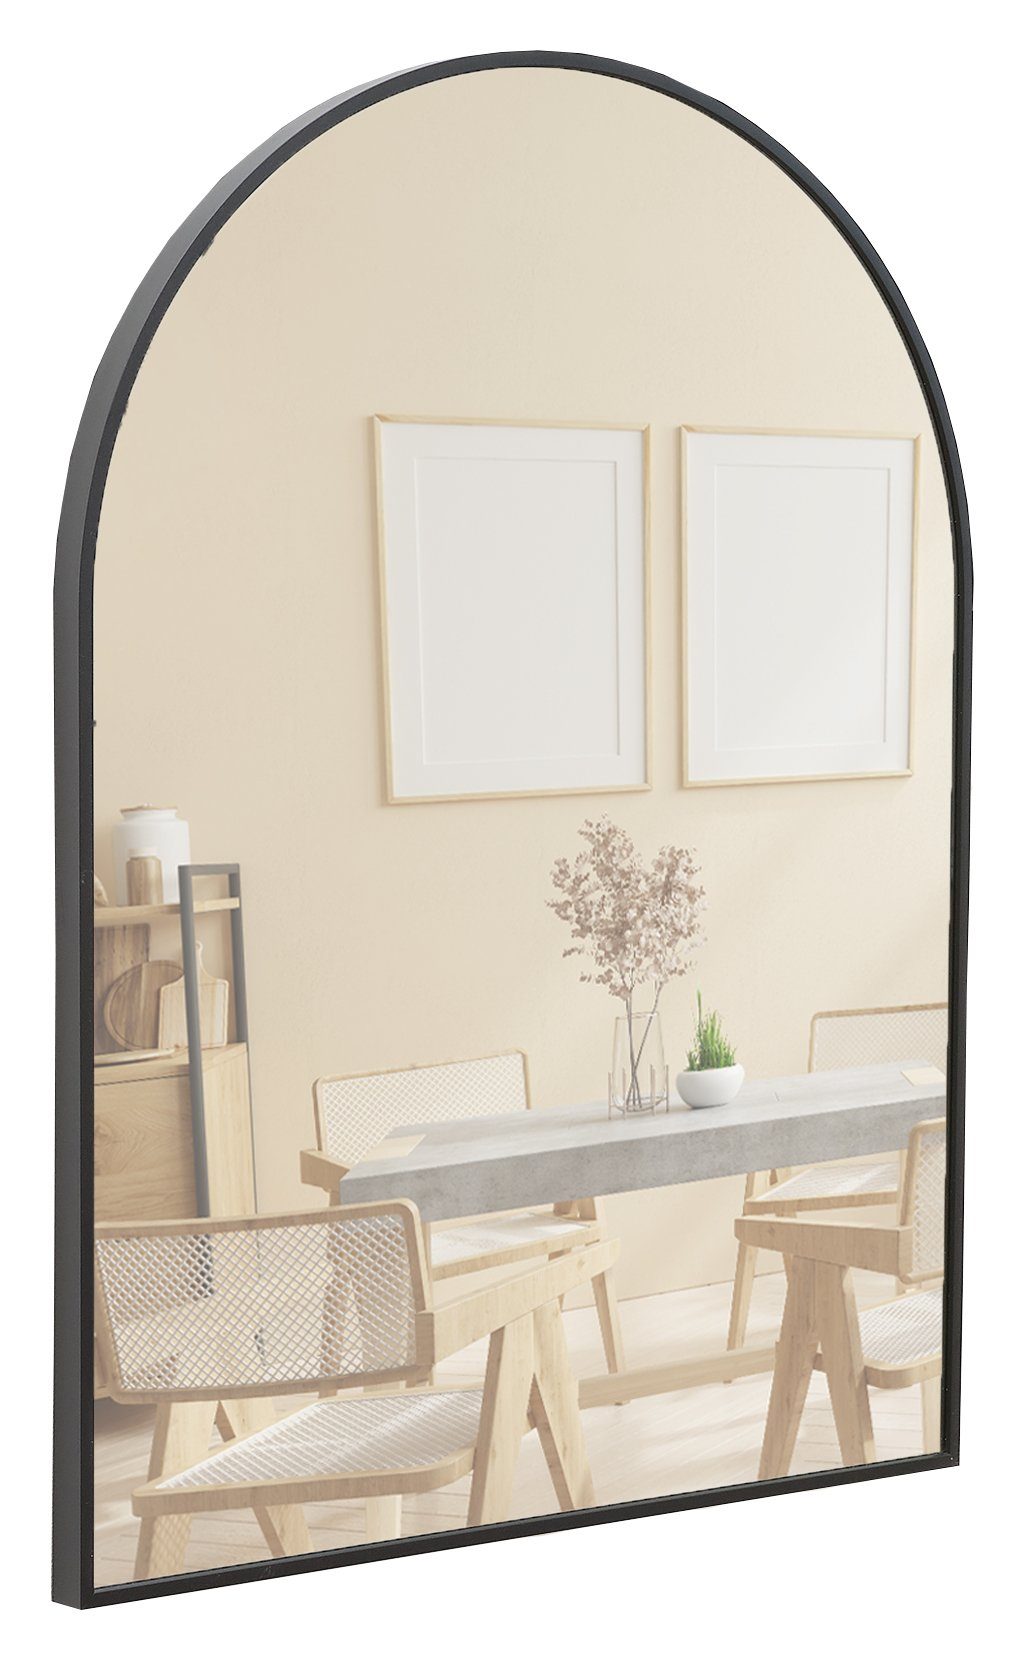 Terra Home Wandspiegel Spiegel 60x80 Metallrahmen Bogenform Schminkspiegel (schwarz, inklusive Schrauben und Dübel), Badezimmerspiegel Flurspiegel schwarz | schwarz